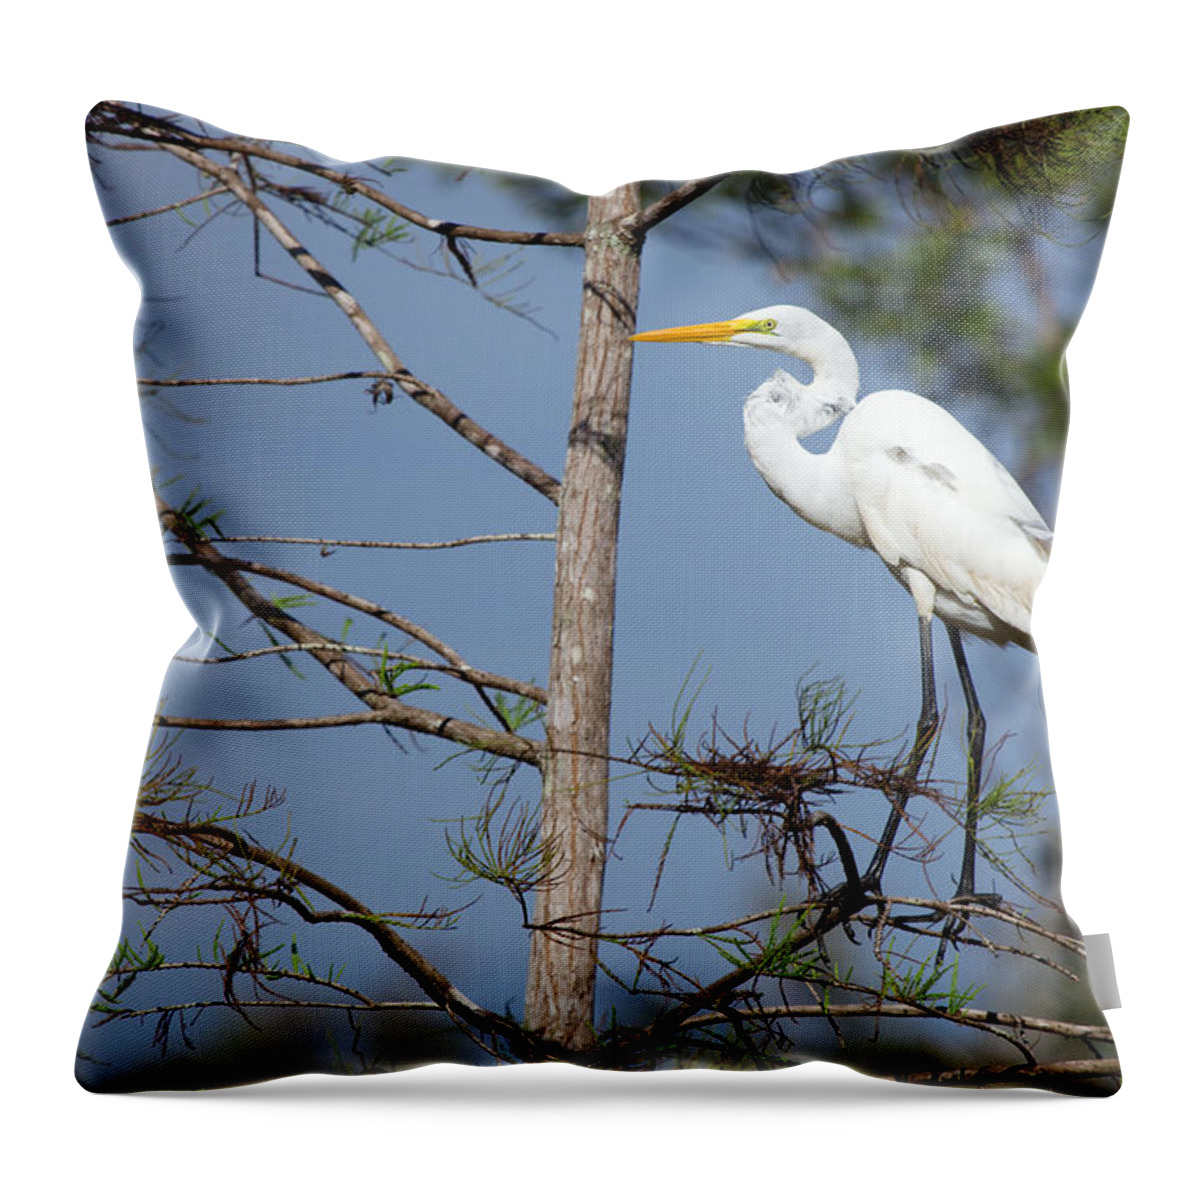 Bird Throw Pillow featuring the photograph Bird 154 by Michael Fryd